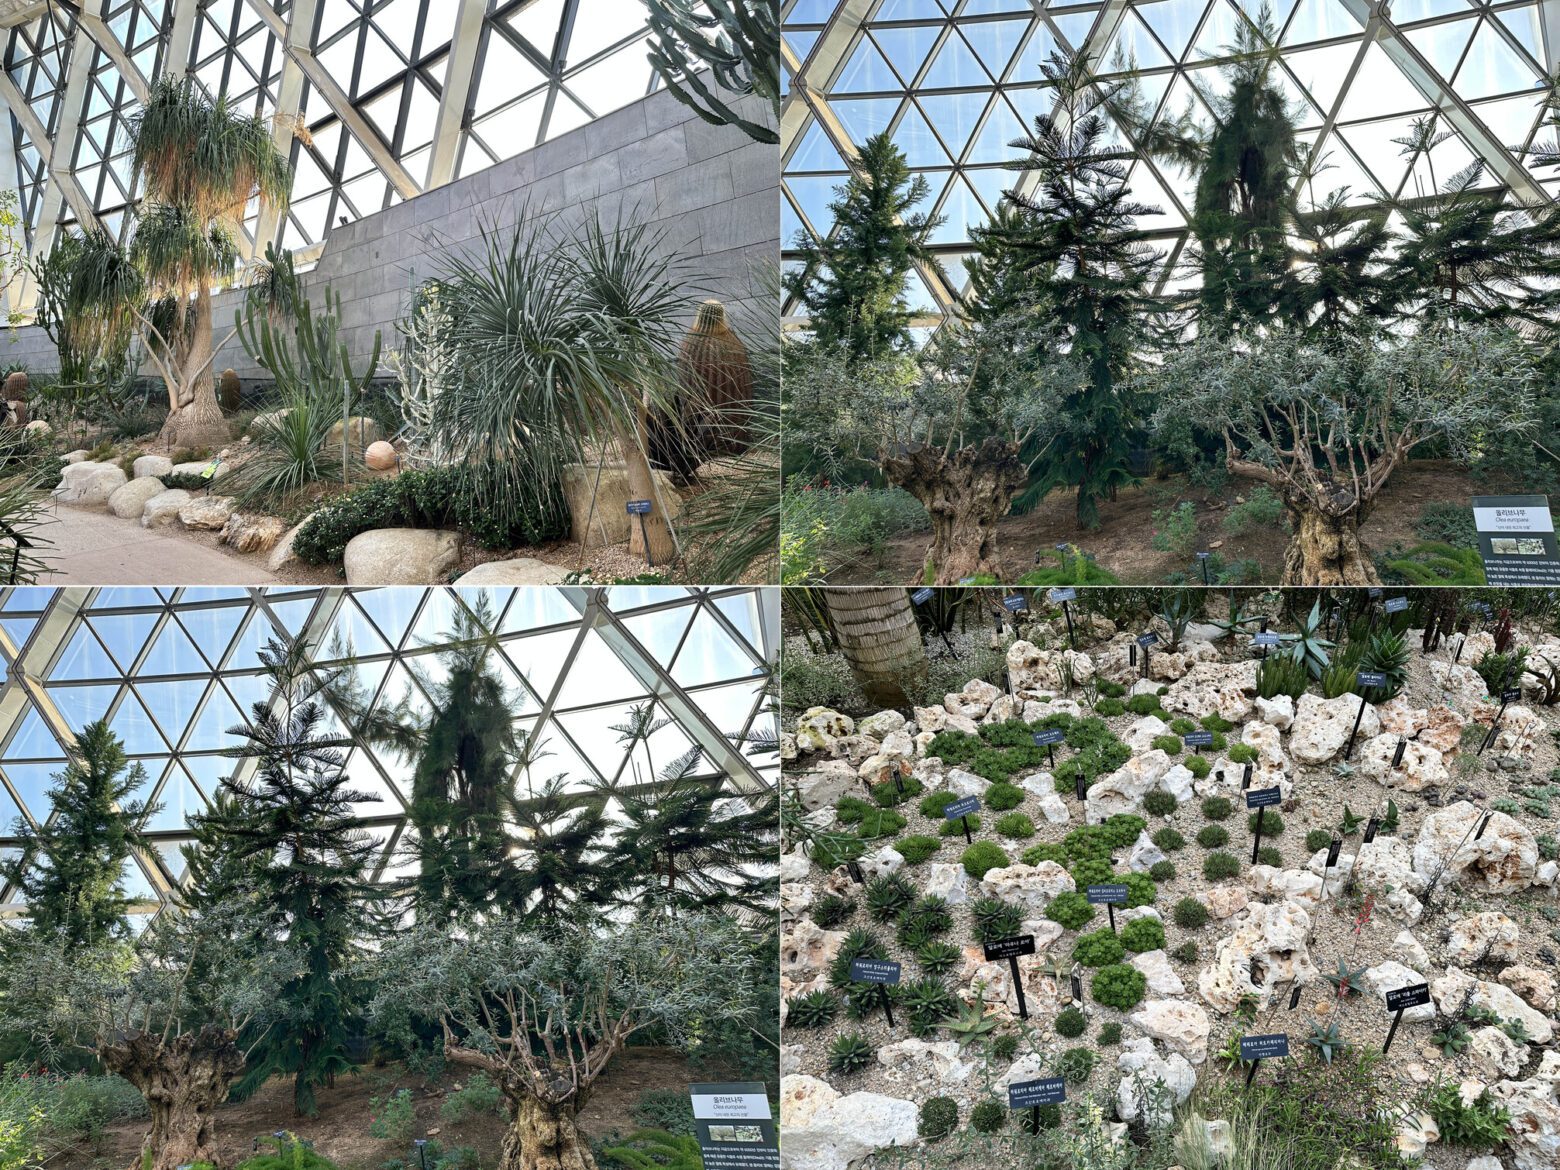 서울식물원 지중해관에 식재된 식물들. 연중 온화한 지중해 기후임에 따라 그 기후에서 생육하는 식물들이 식재되어 있다.